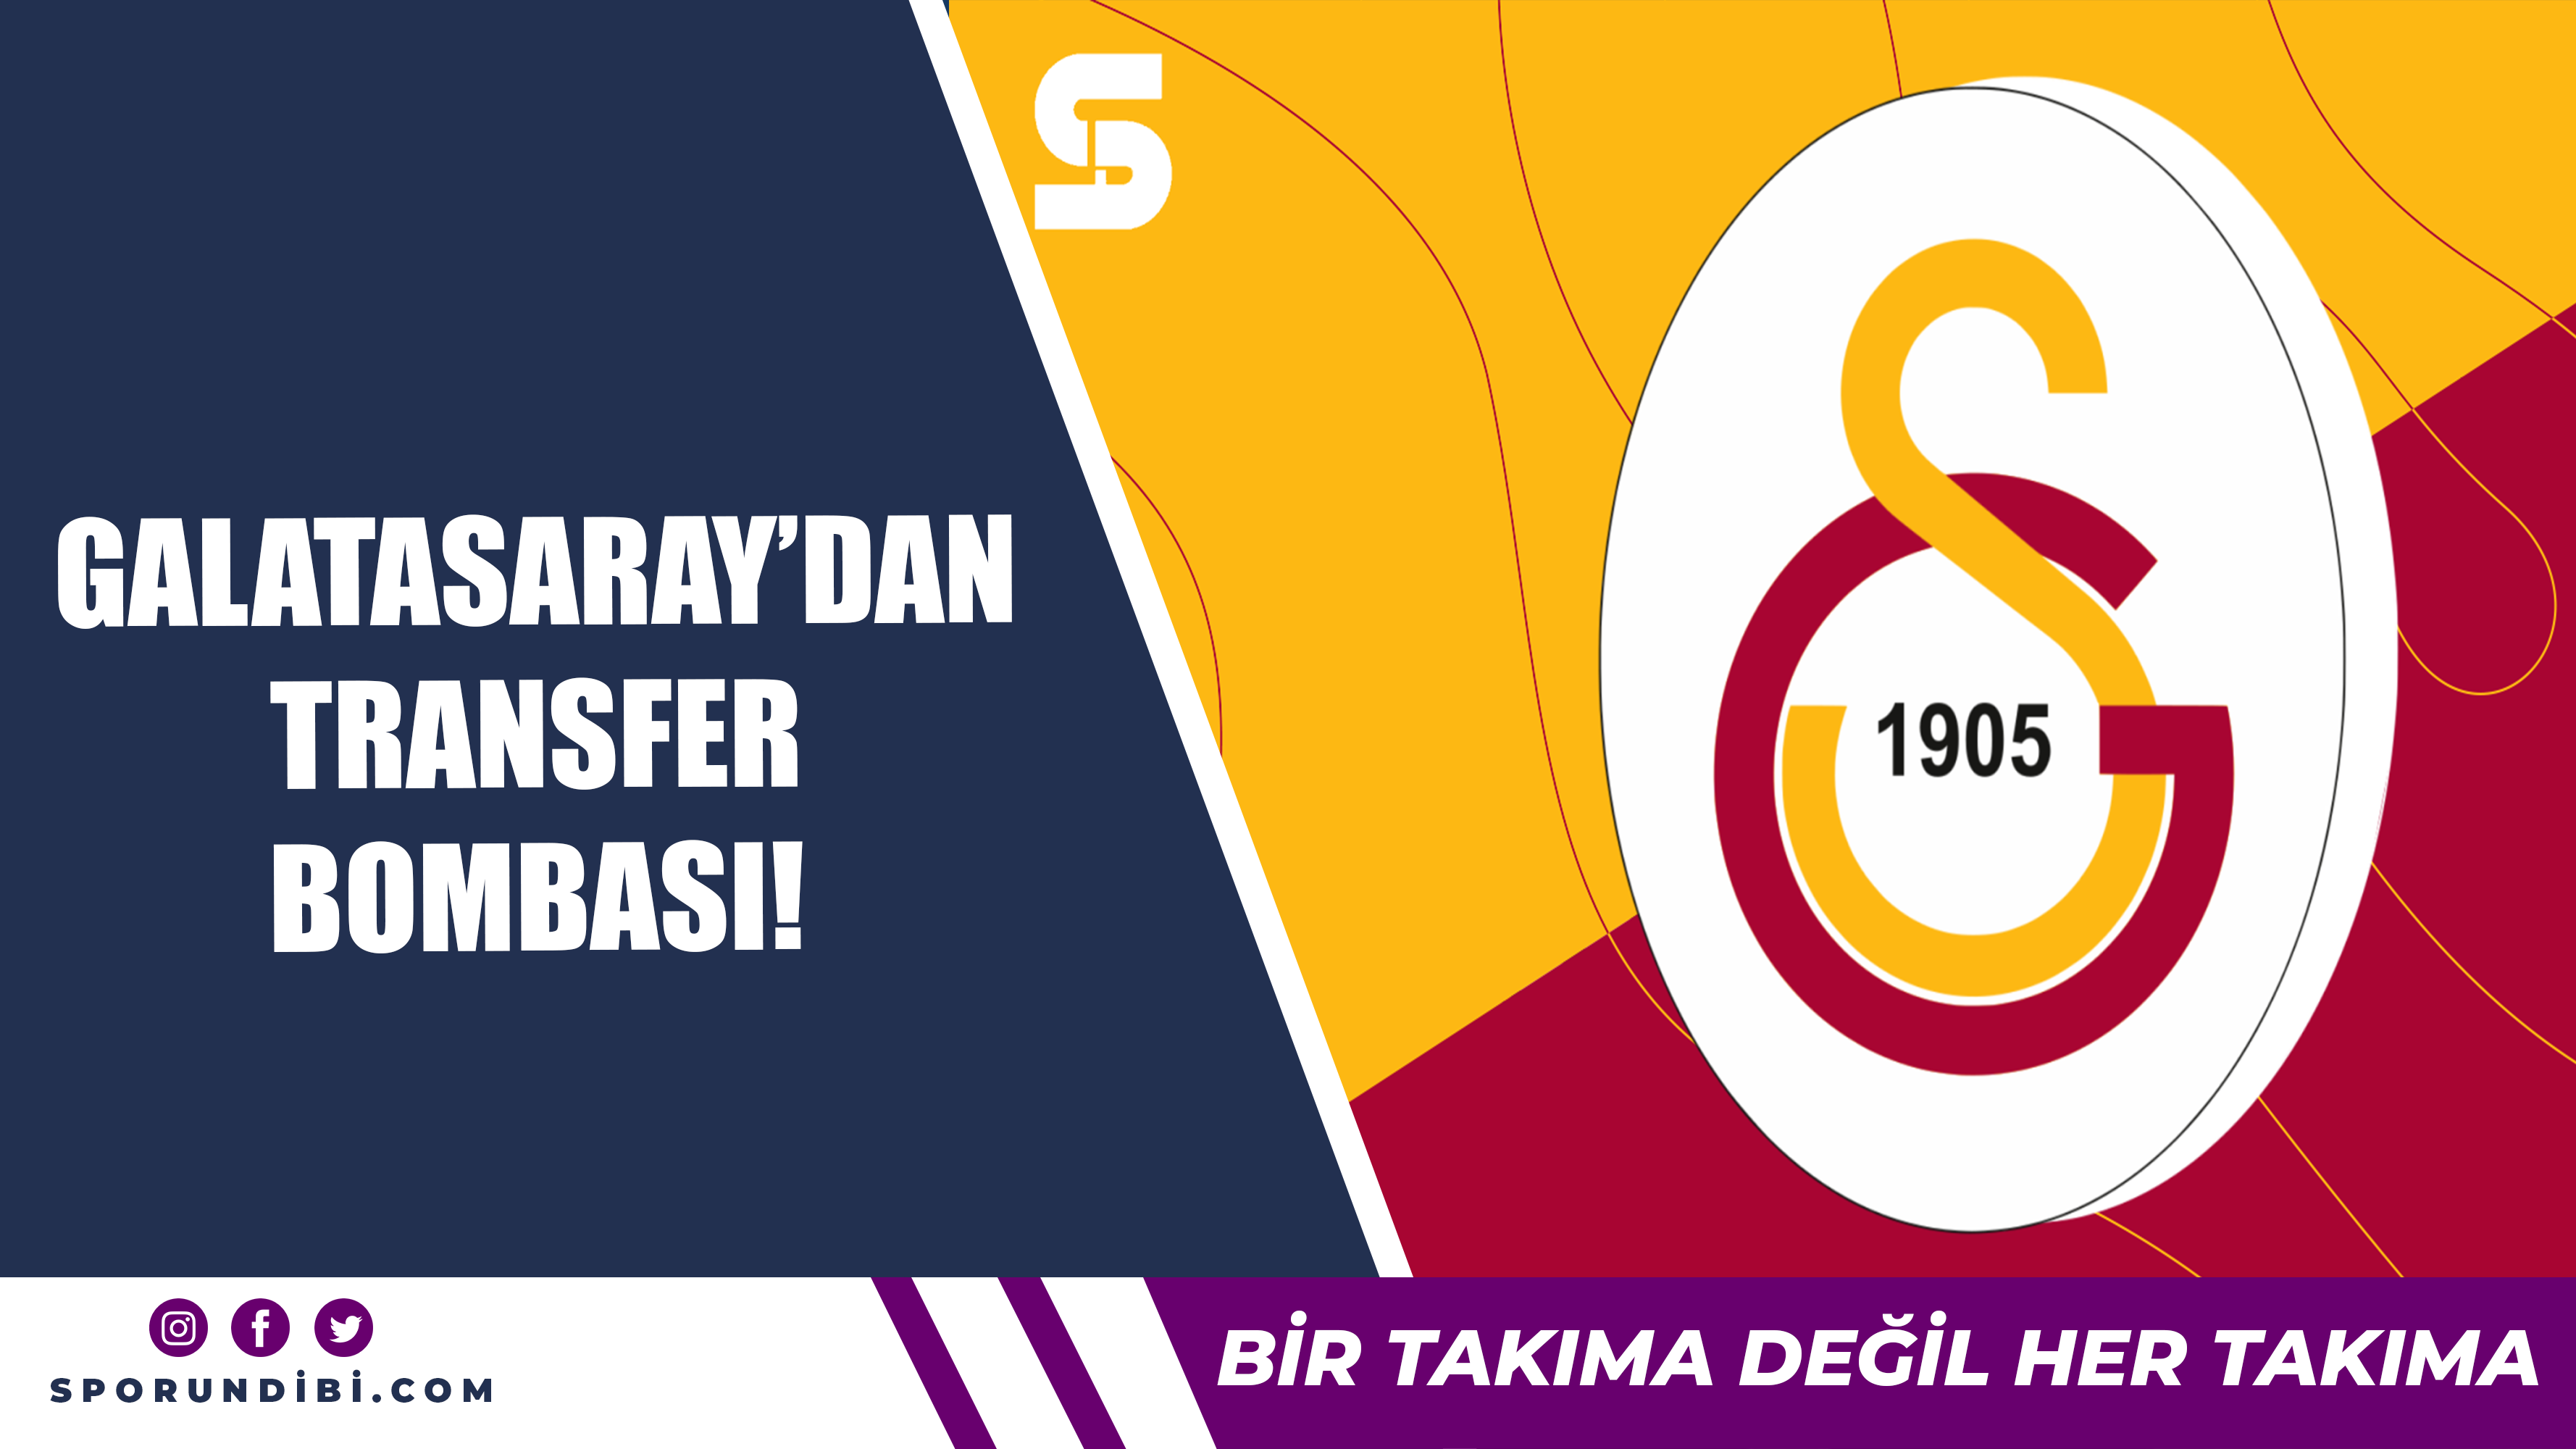 Galatasaray'dan transfer bombası!